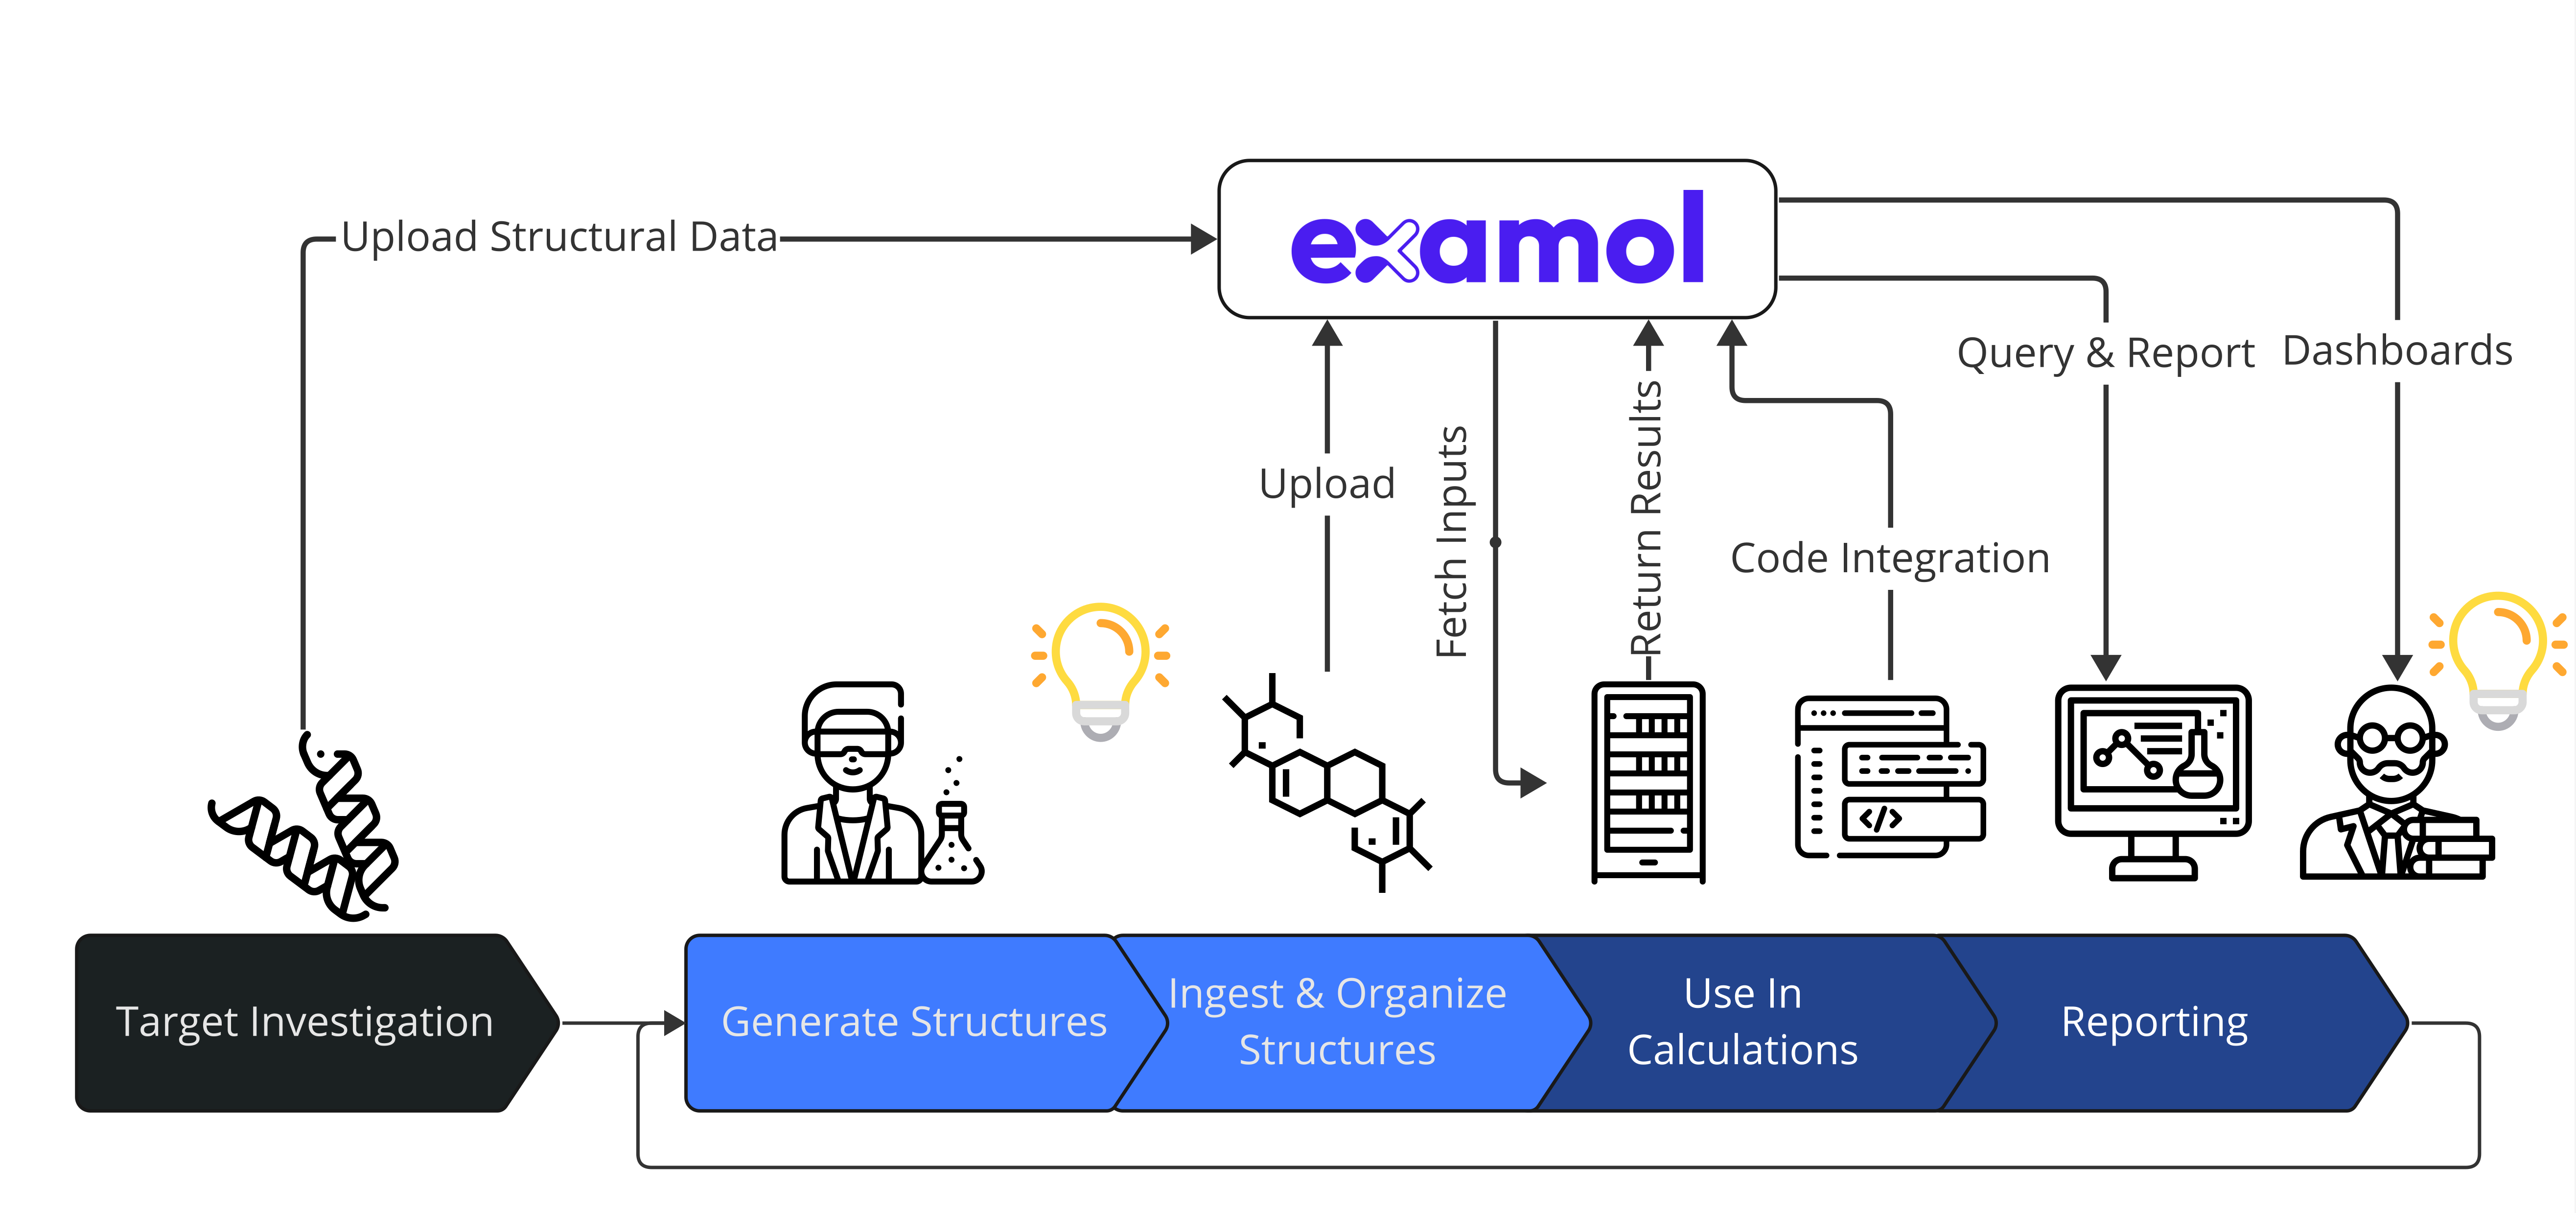 Examol Platform Workflow Image